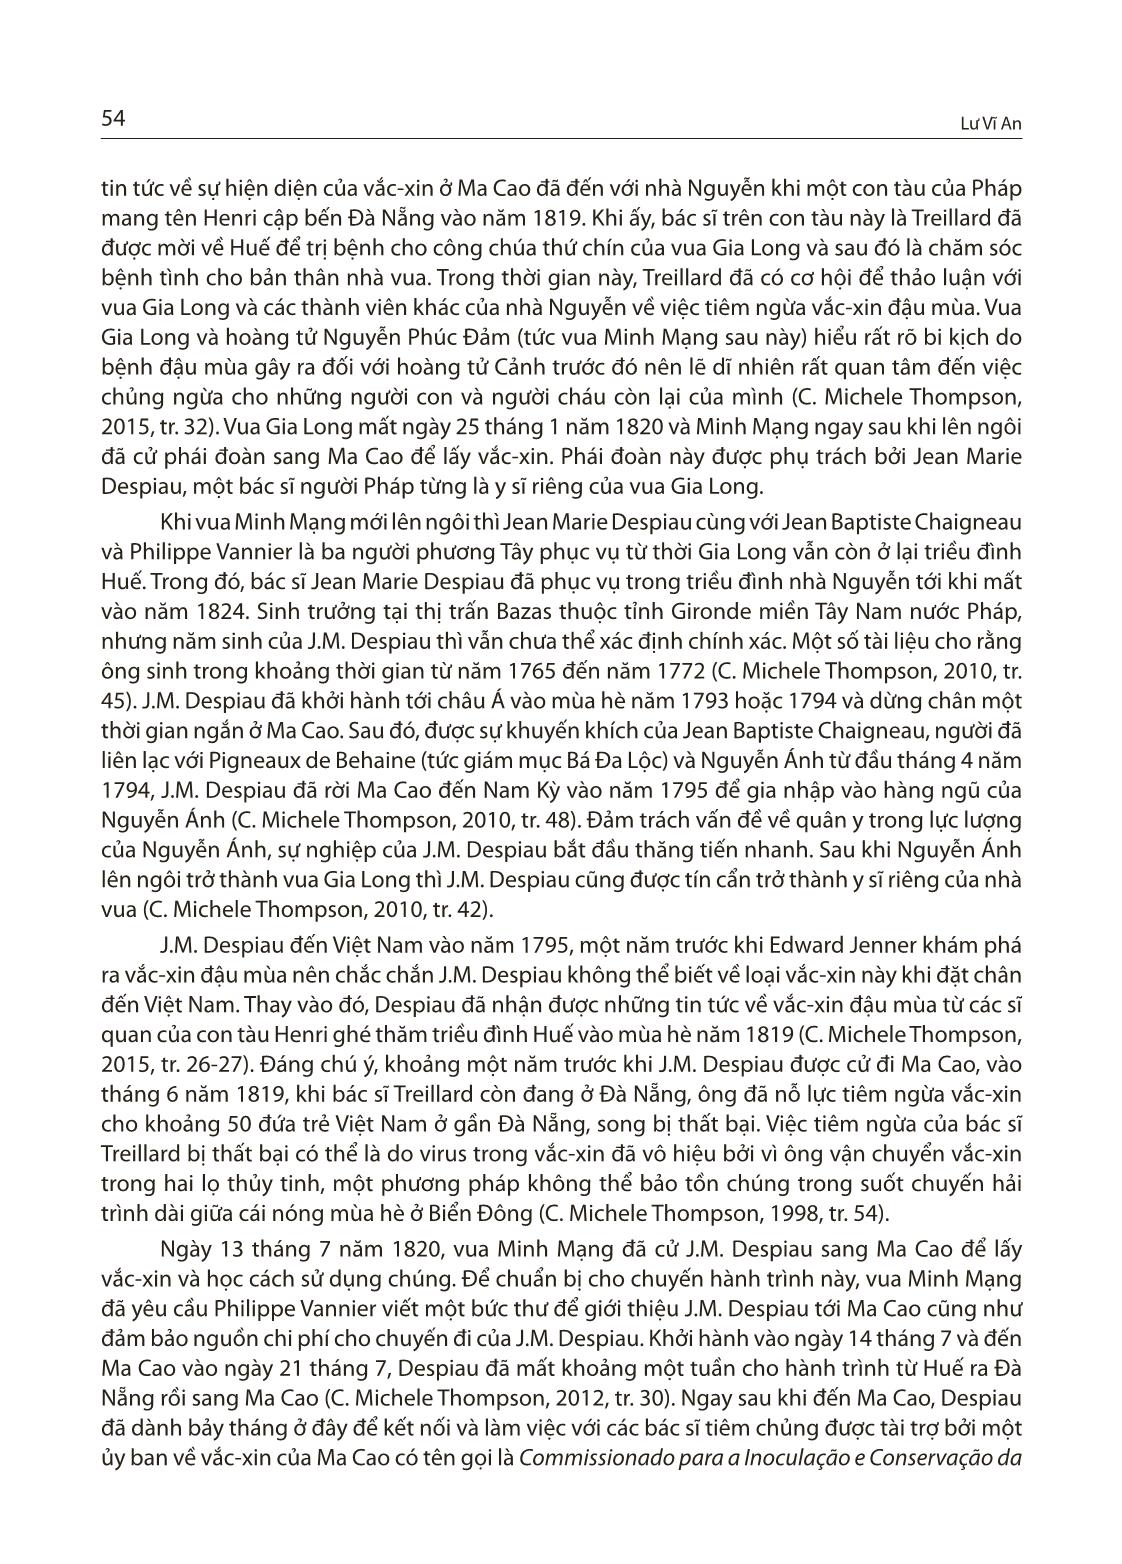 Bệnh đậu mùa ở Việt Nam thời Nguyễn và việc tiếp cận vắc-Xin đậu mùa của nhà Nguyễn vào đầu thế kỷ XIX trang 6